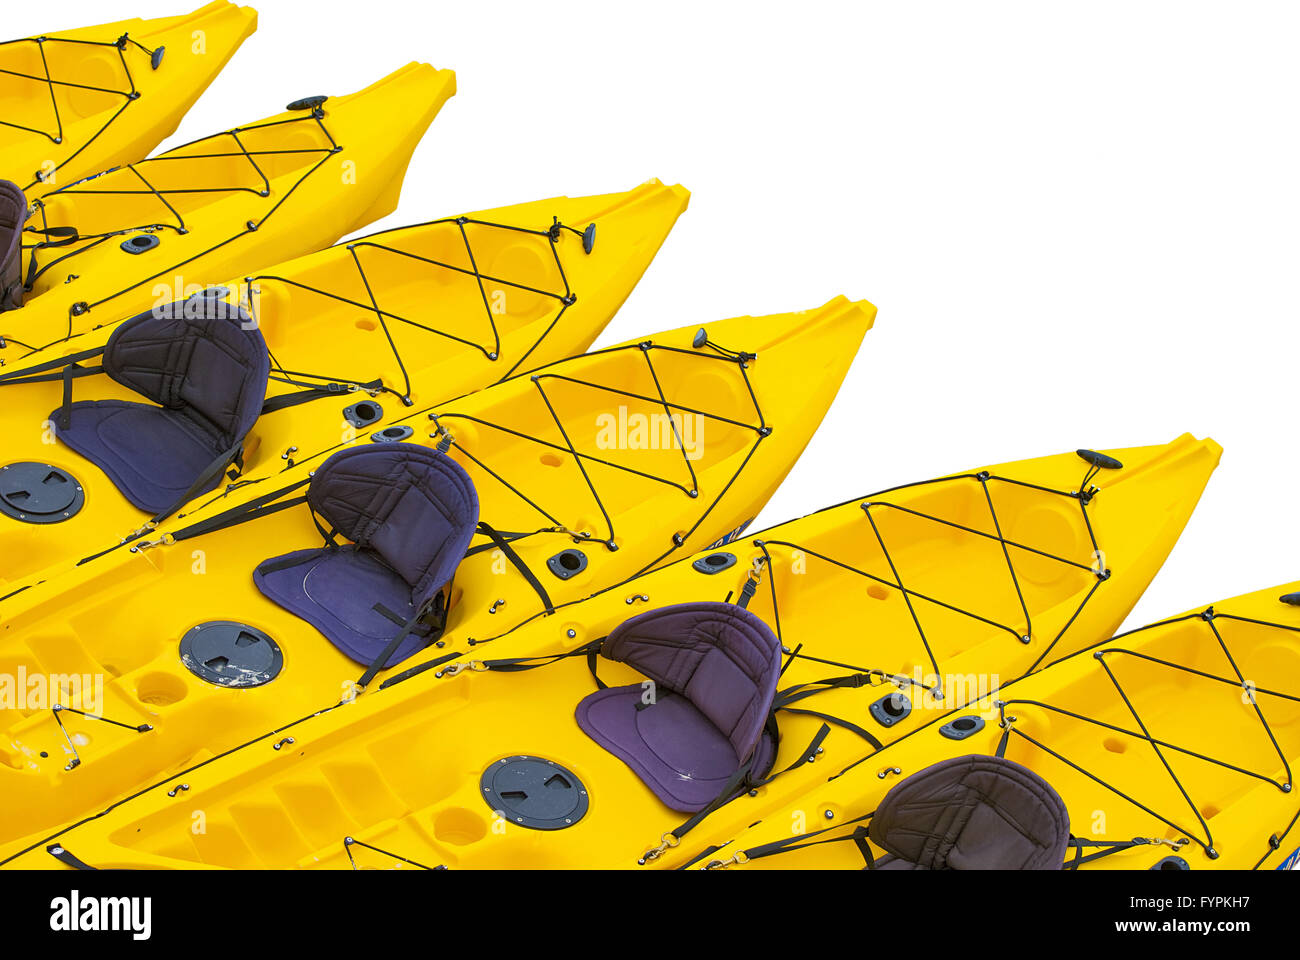 Yellow kayaks on a white background. Stock Photo